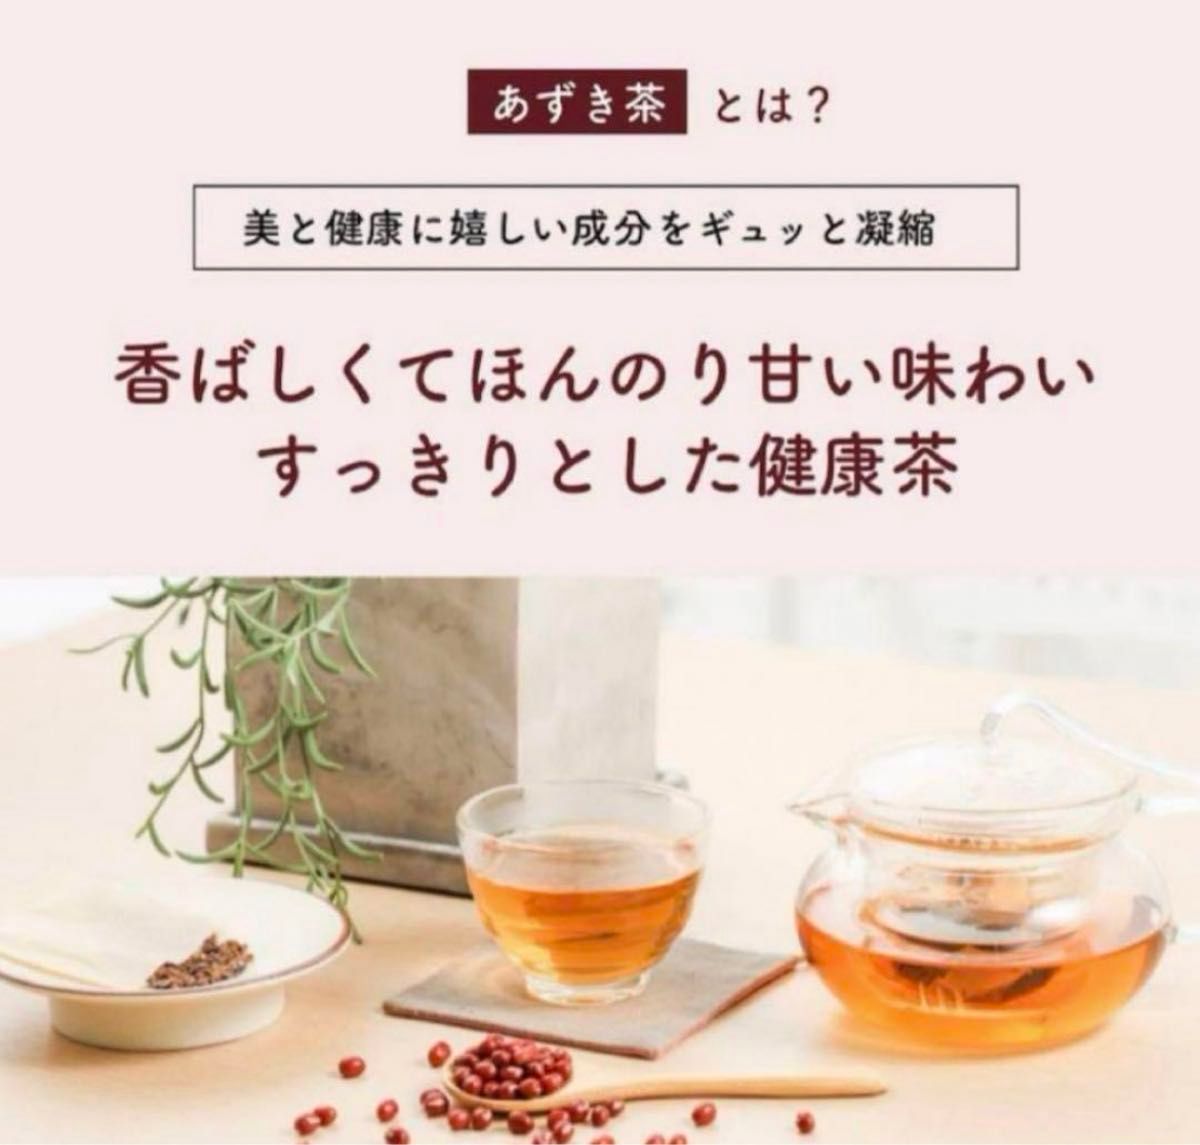 【お試し価格】売れてます あずき茶 粉末タイプ 北海道産 小豆茶 100g ノンカフェイン あずきちゃ 国産 国産小豆100％